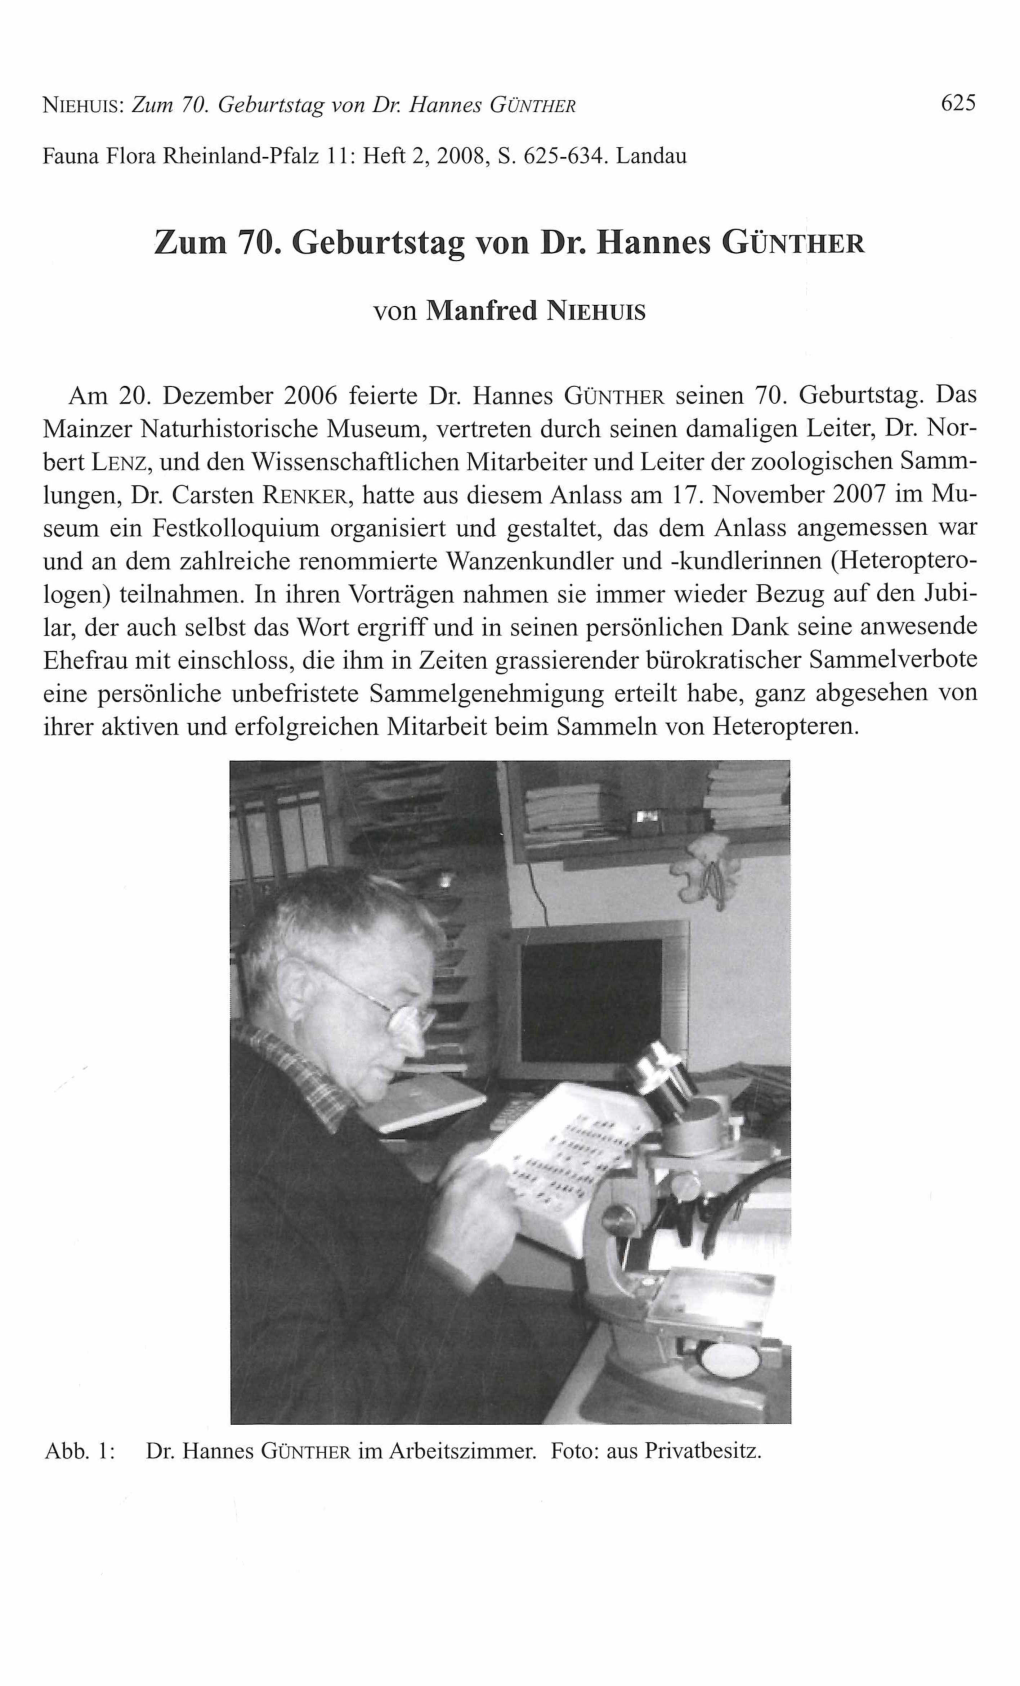 Zum 70. Geburtstag Von Dr. Hannes GÜNTHER